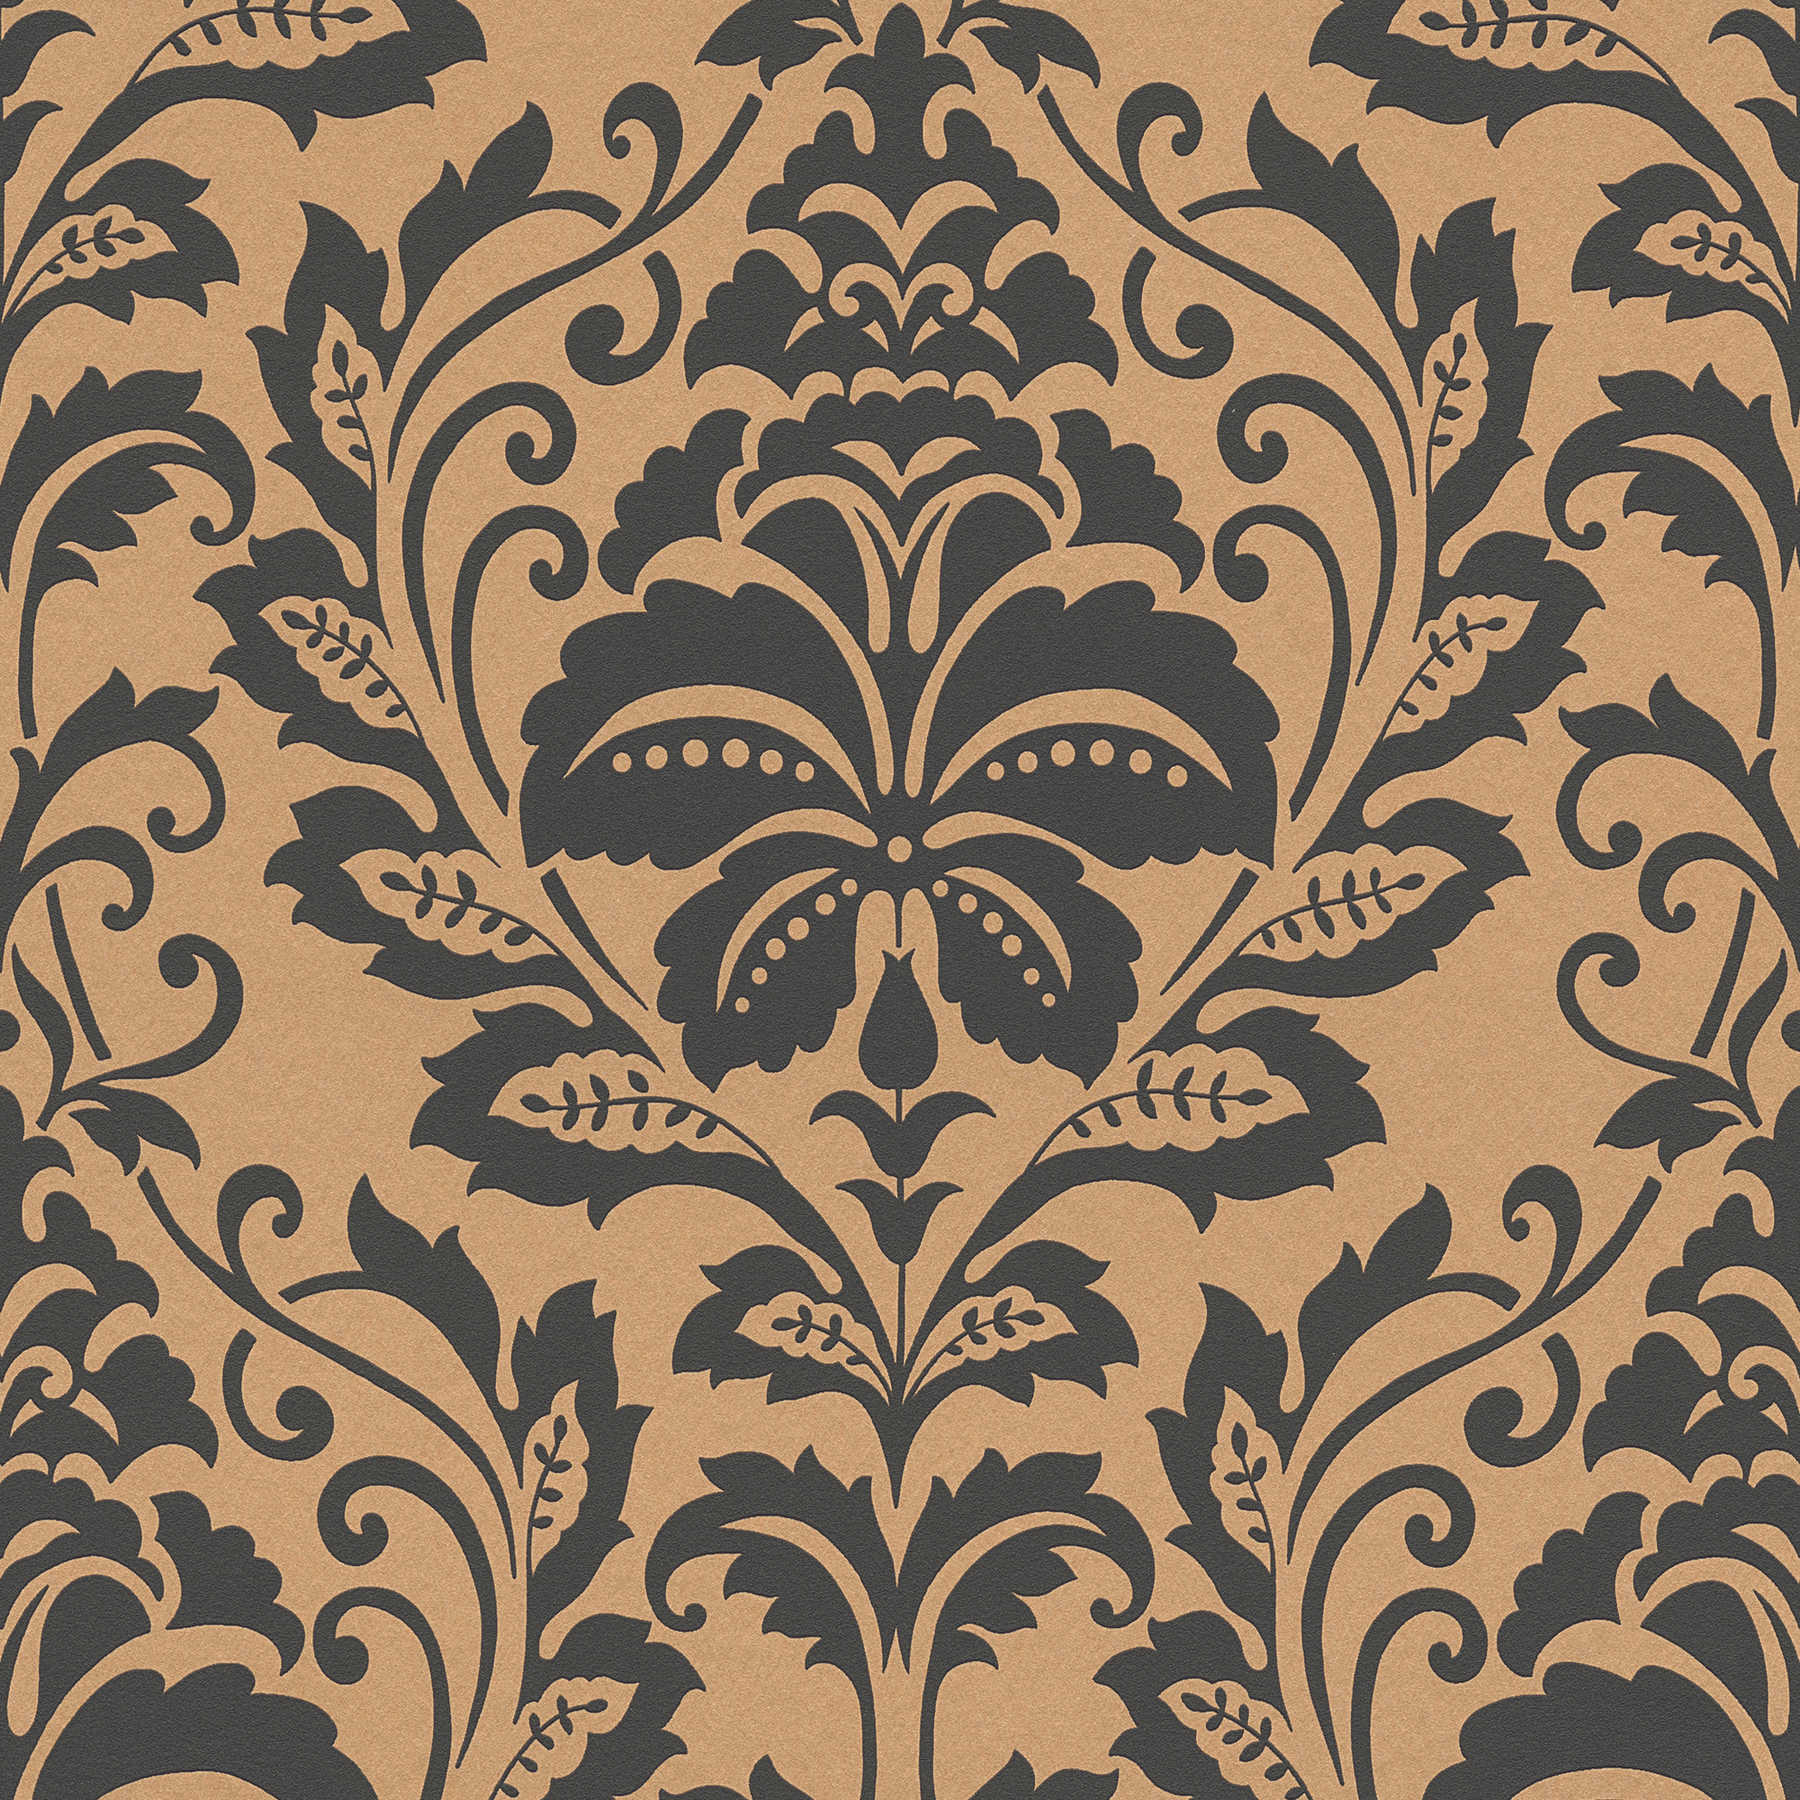 Neo classic ornament wallpaper, floral - brown, orange
